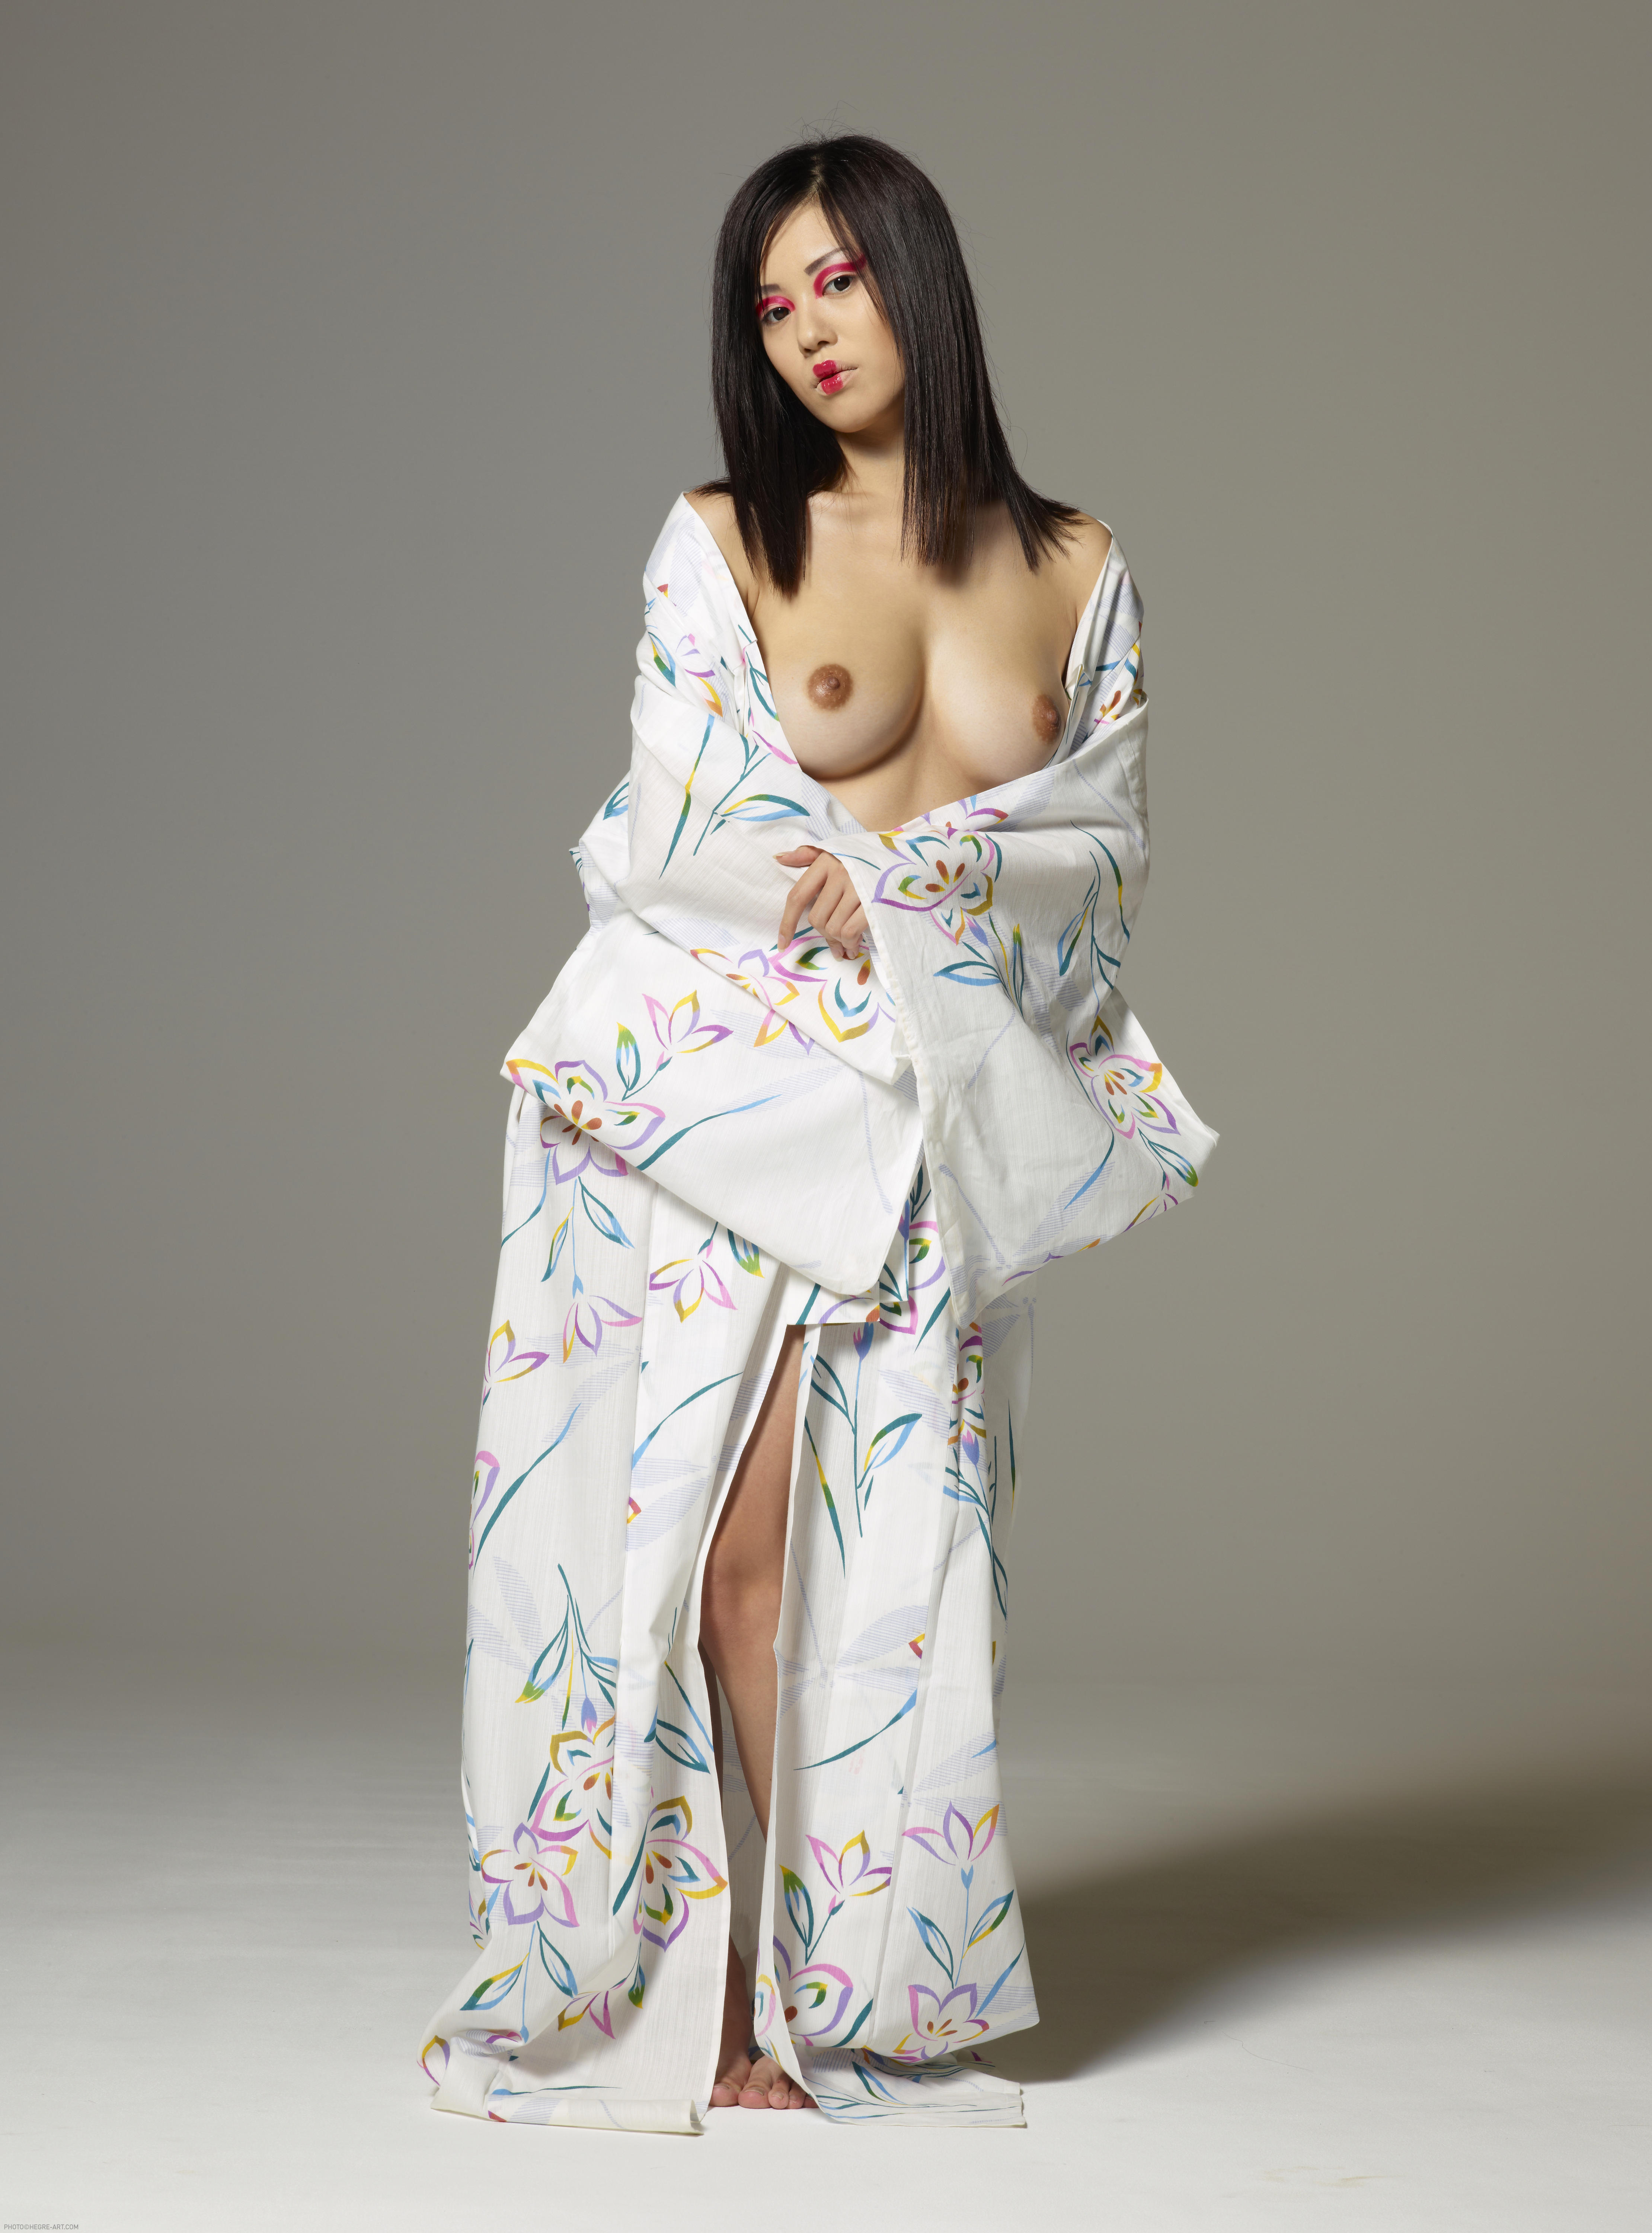 Konata Kimono 2011 04 13 003 xxxl